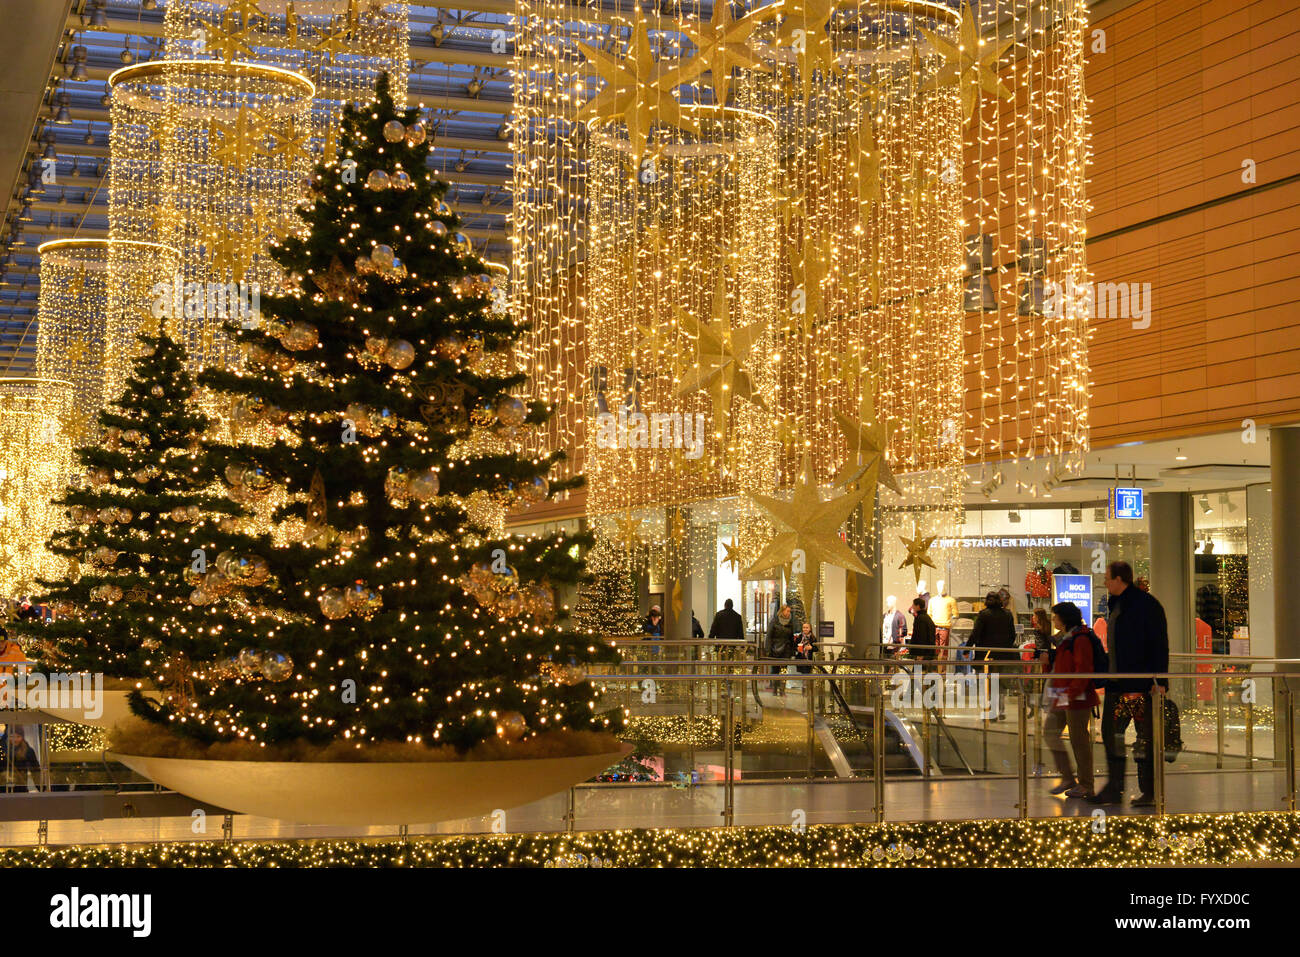 Centro commerciale Potsdamer Platz Arkaden, decorata, albero di natale, Christmas shopping, Potsdamer Platz e il Tiergarten di Berlino, Germania / Potsdamer Platz, Portici Foto Stock